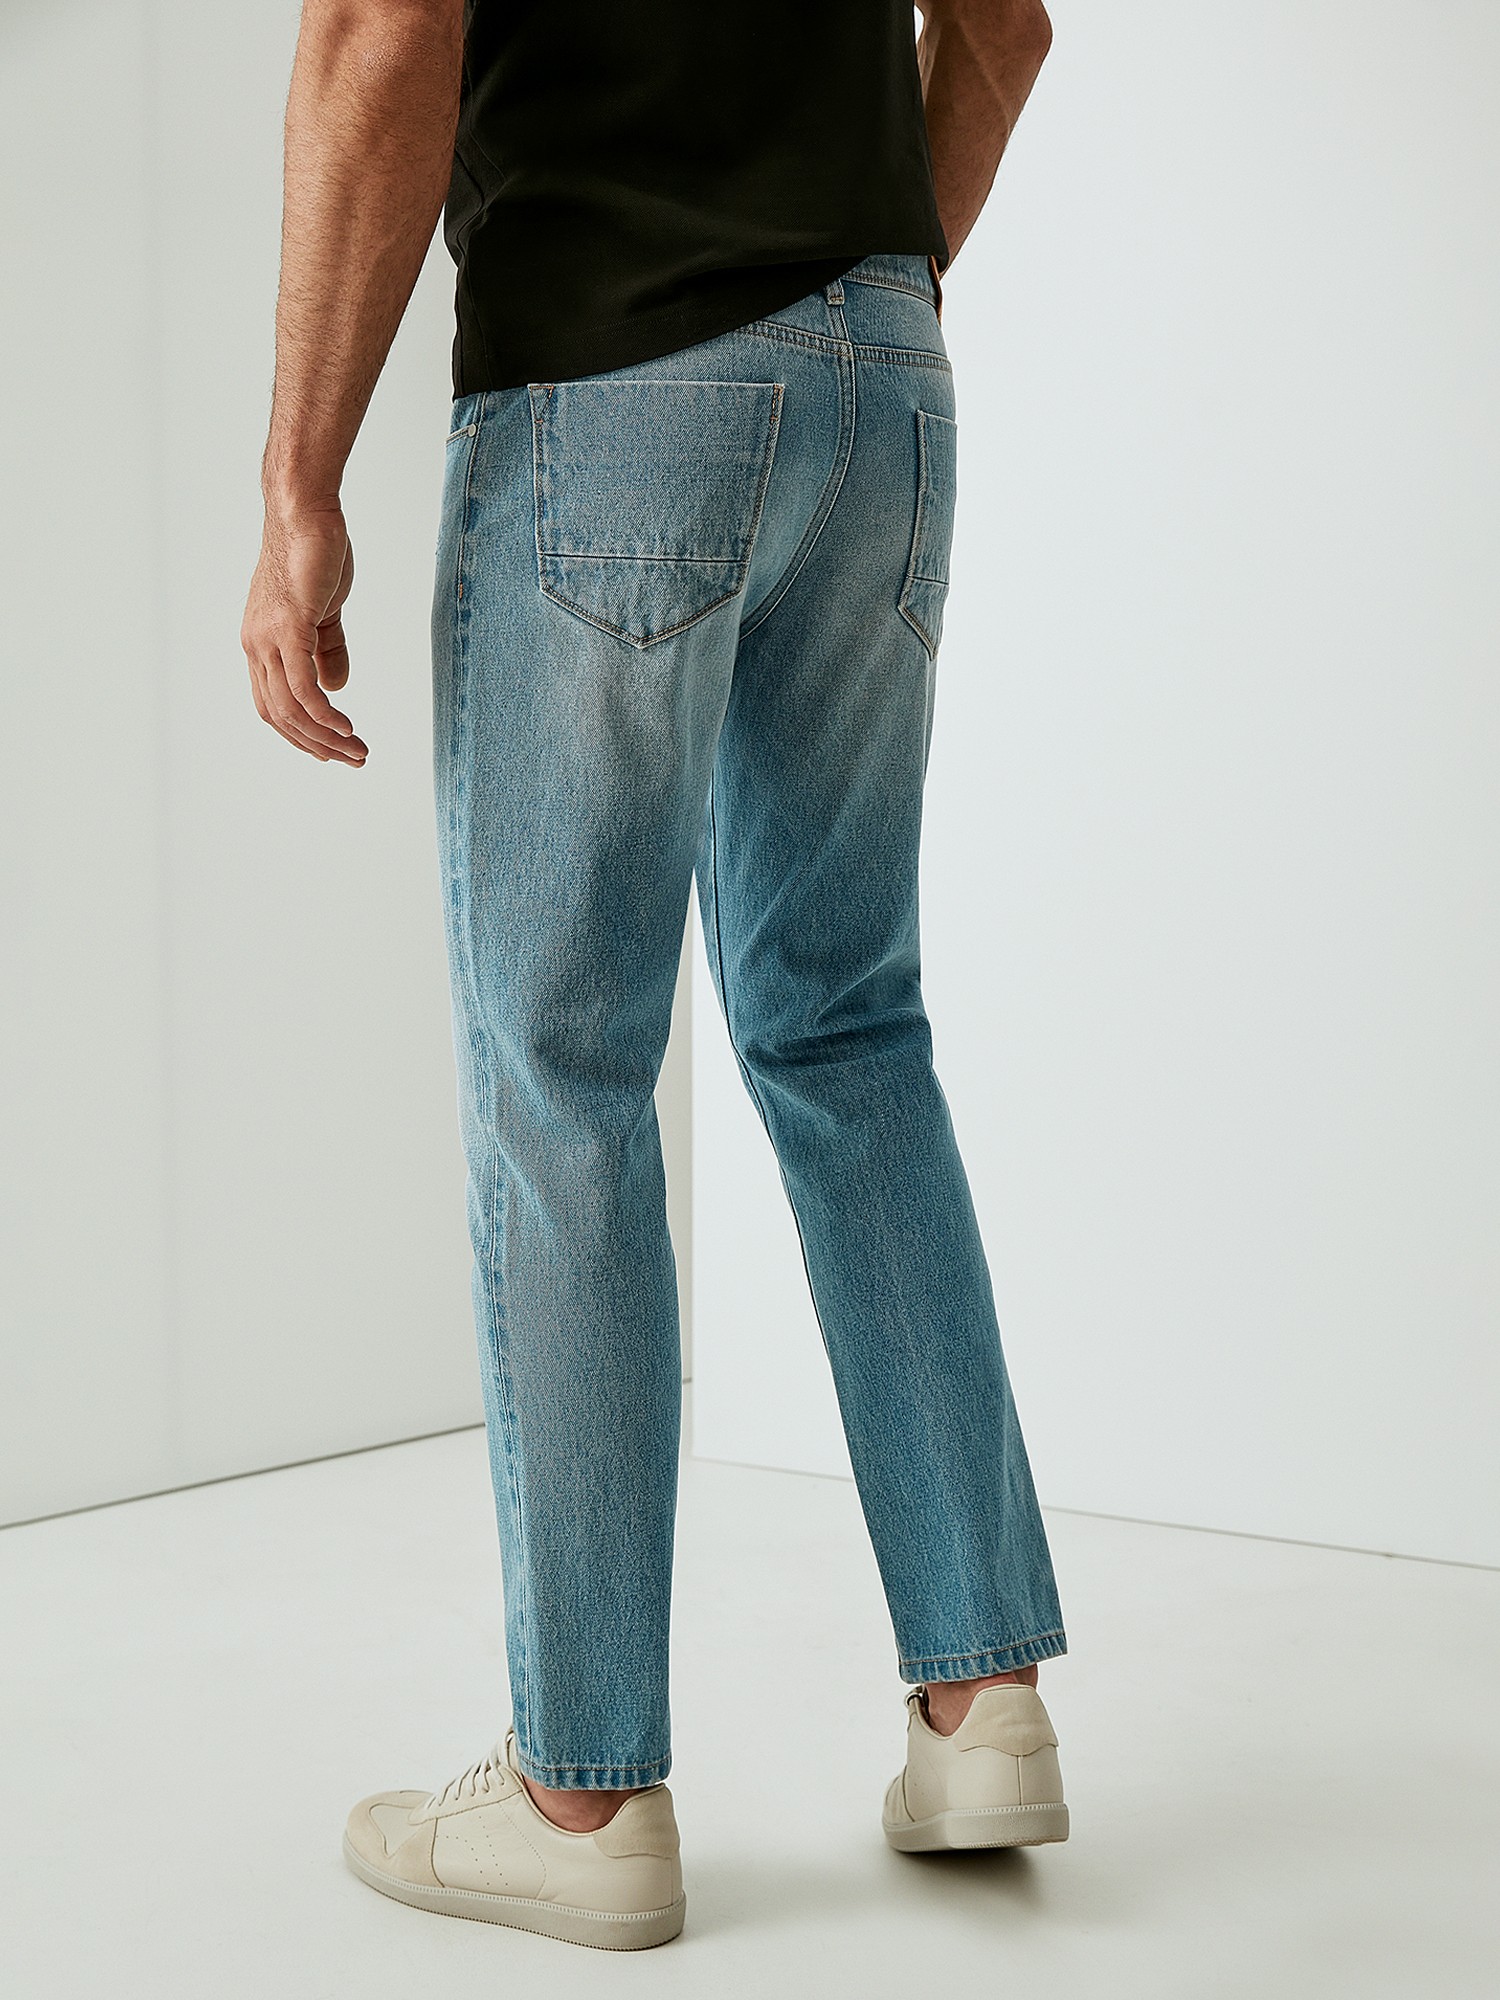 Джинсы 20. MAXLINE джинсы. Crinkle Jeans Effect. MAXLINE Jeans.